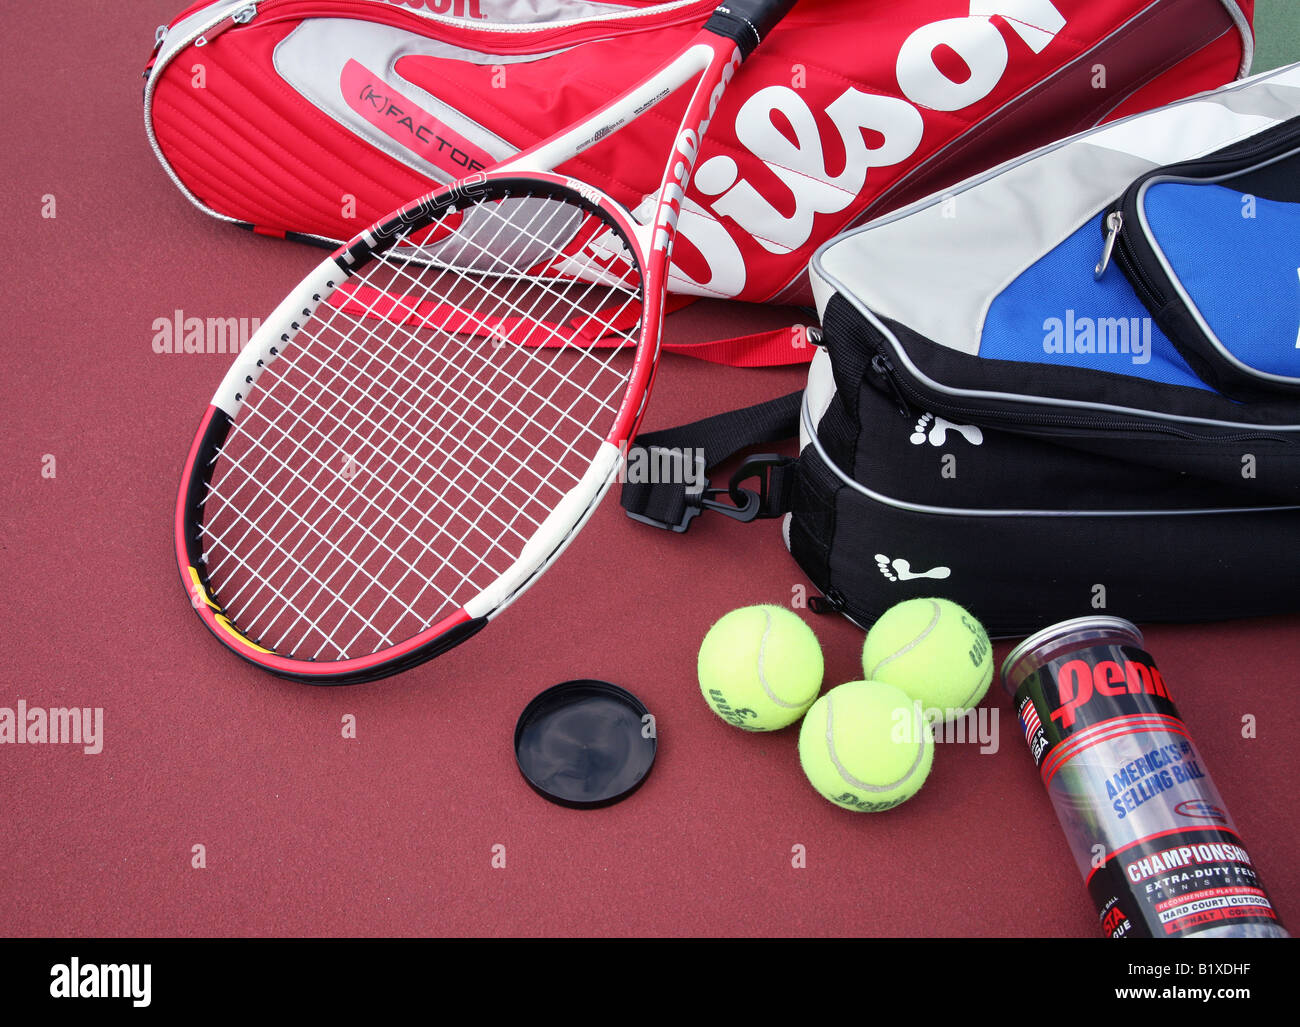 Dos bolsas de raqueta de tenis con dos raquetas de tenis sentar cruzado en  la parte superior y un contenedor de pelotas de tenis acostado sobre una  pista de tenis Fotografía de